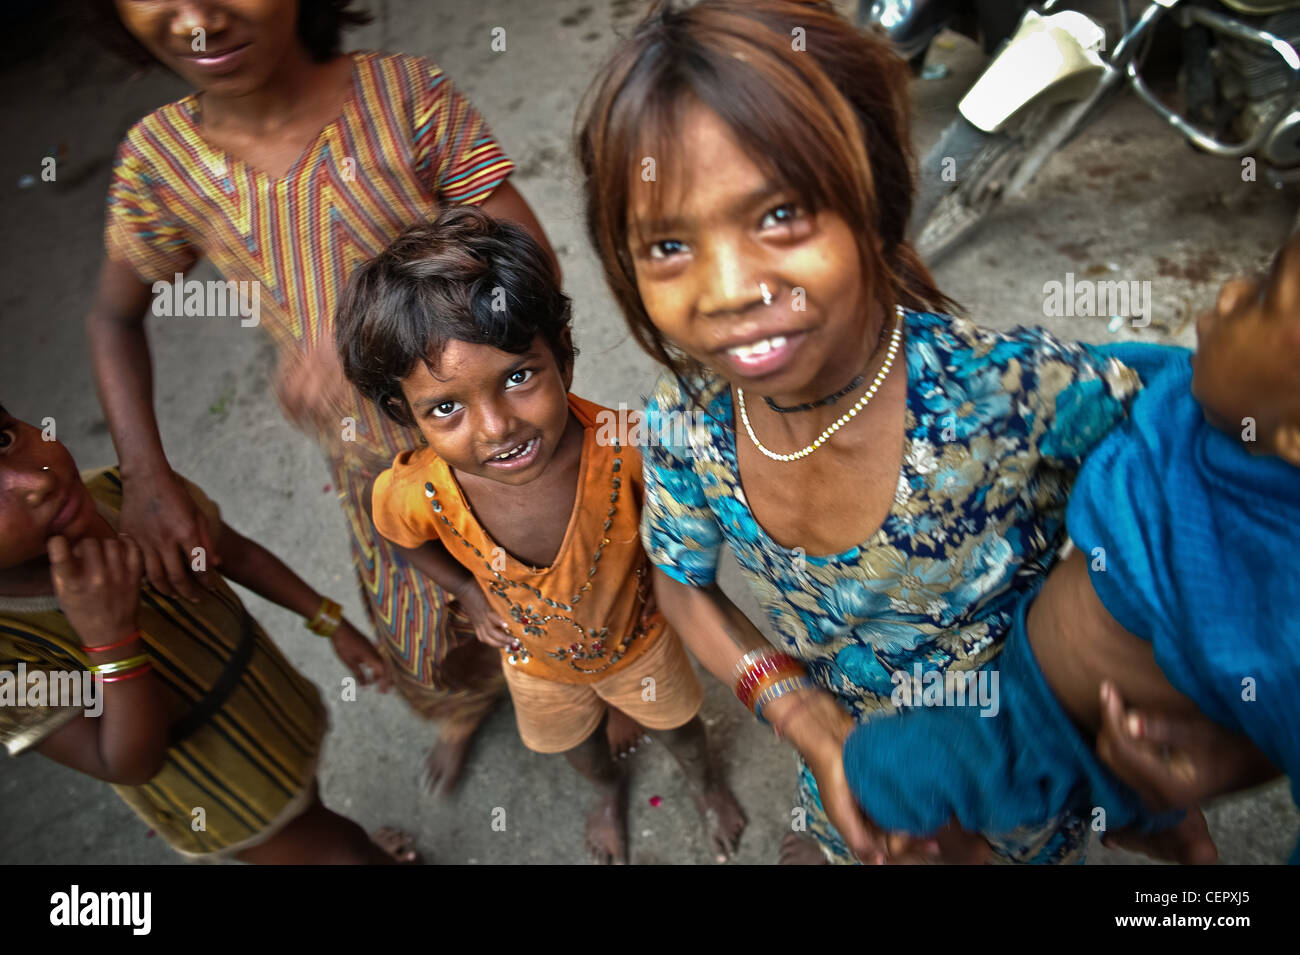 New Delhi, Street children in Delhi Stock Photo